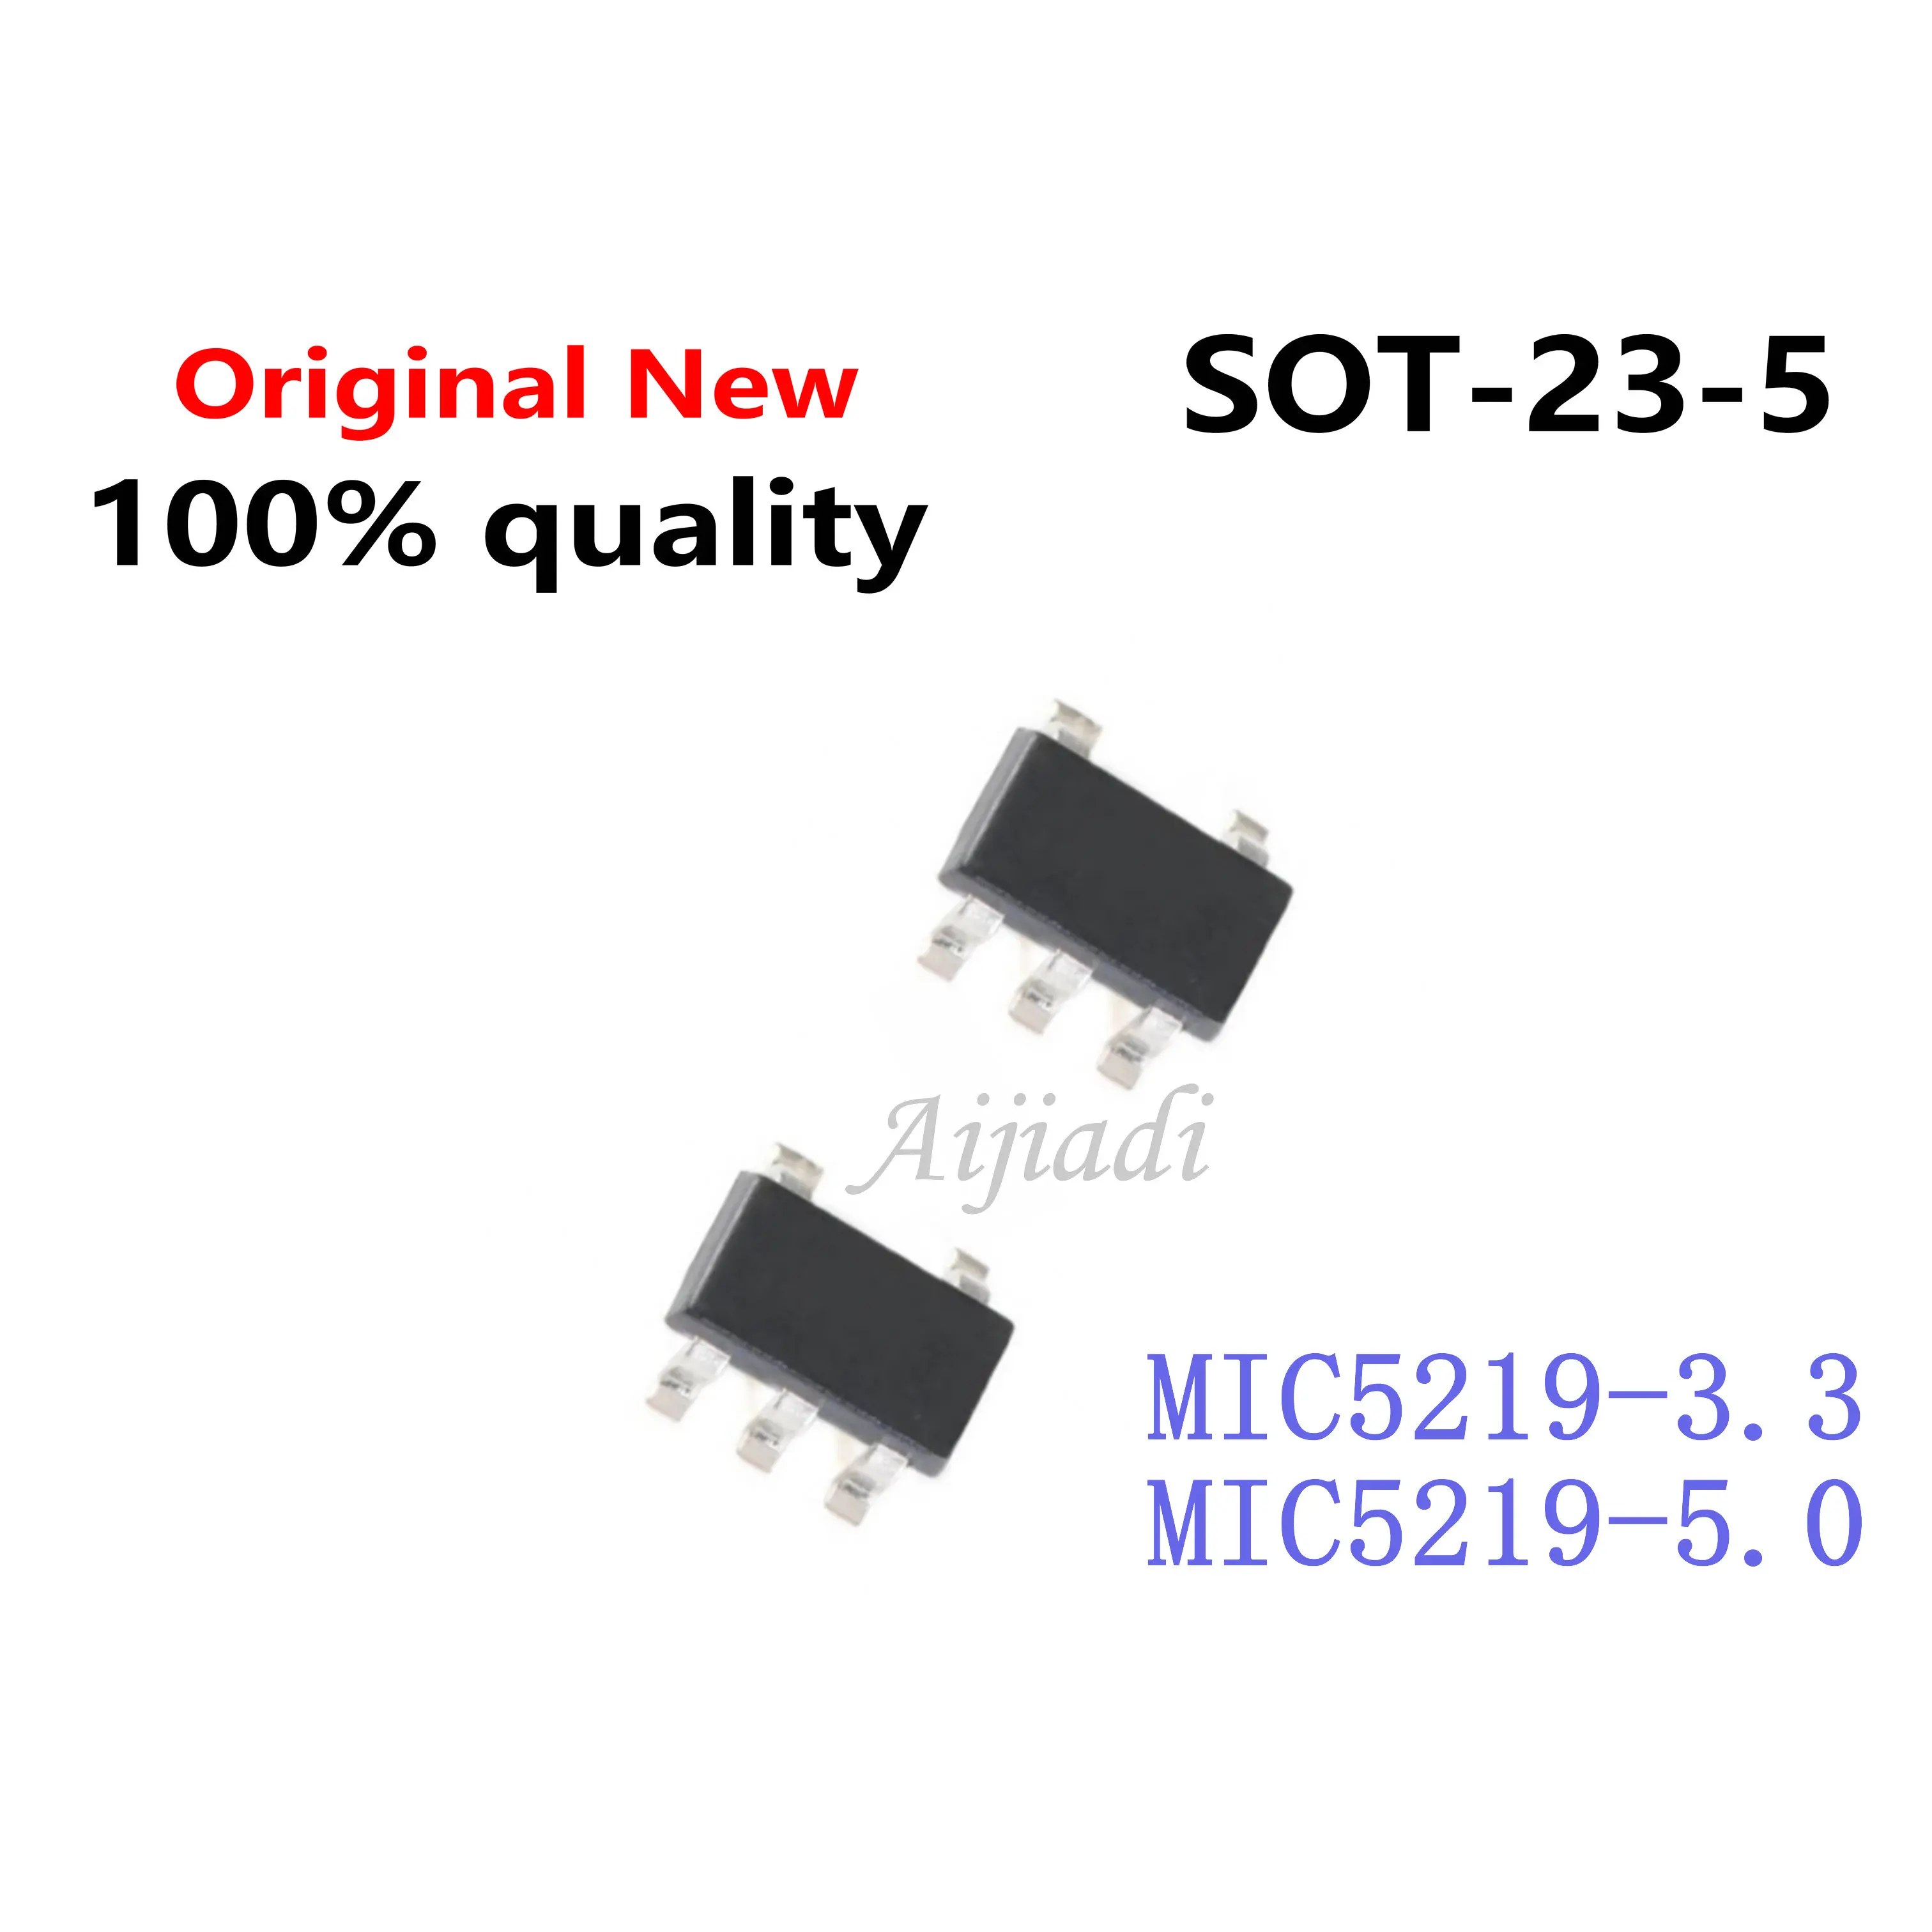 10pcs/הרבה MIC5219-3.3BM5 SOT-23 MIC5219-3.3 3.3 V MIC5219-3.3YM5 LG33 MIC5219-5.0 SOT-23-5 LG50 MIC5219-5.0BM5 MIC5219-5.0YM5